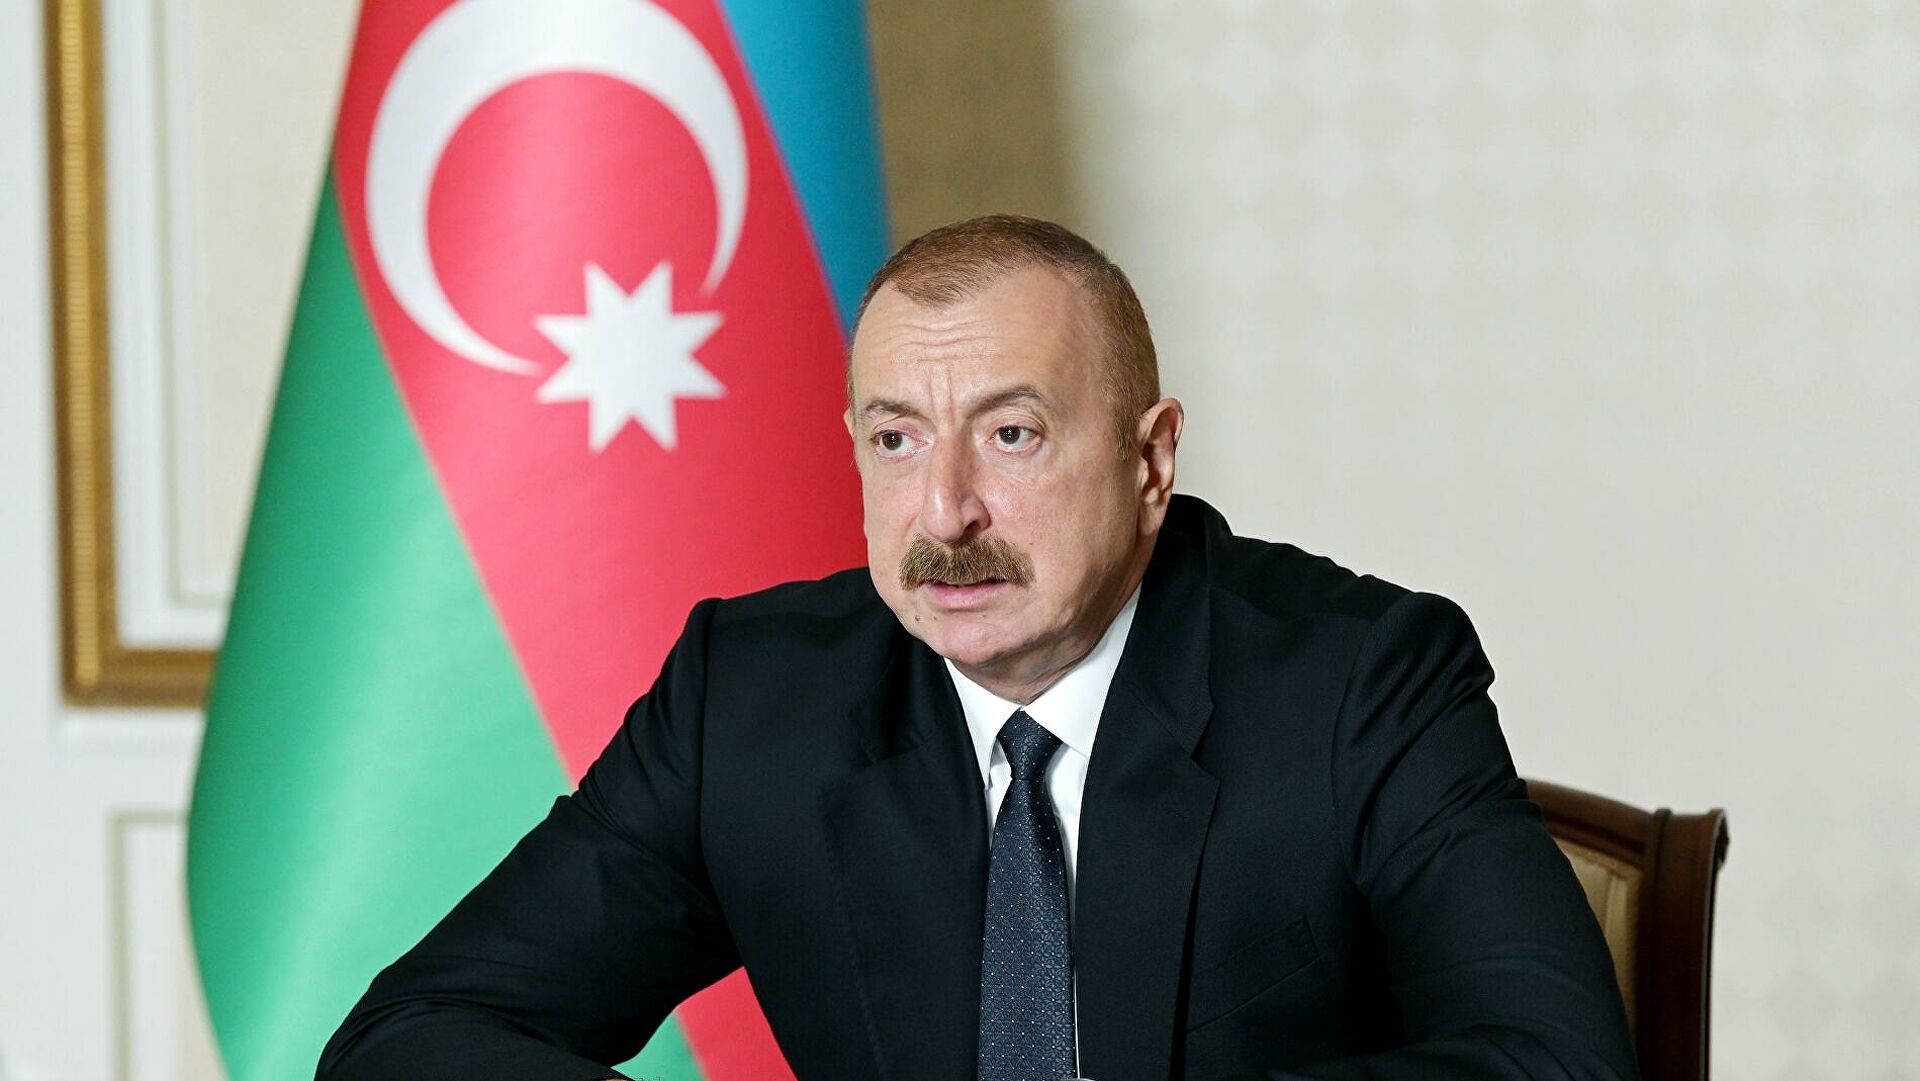 Алиев заявил, что железные дороги Армении на 100% принадлежат России: "Ей уже ничего не принадлежит"